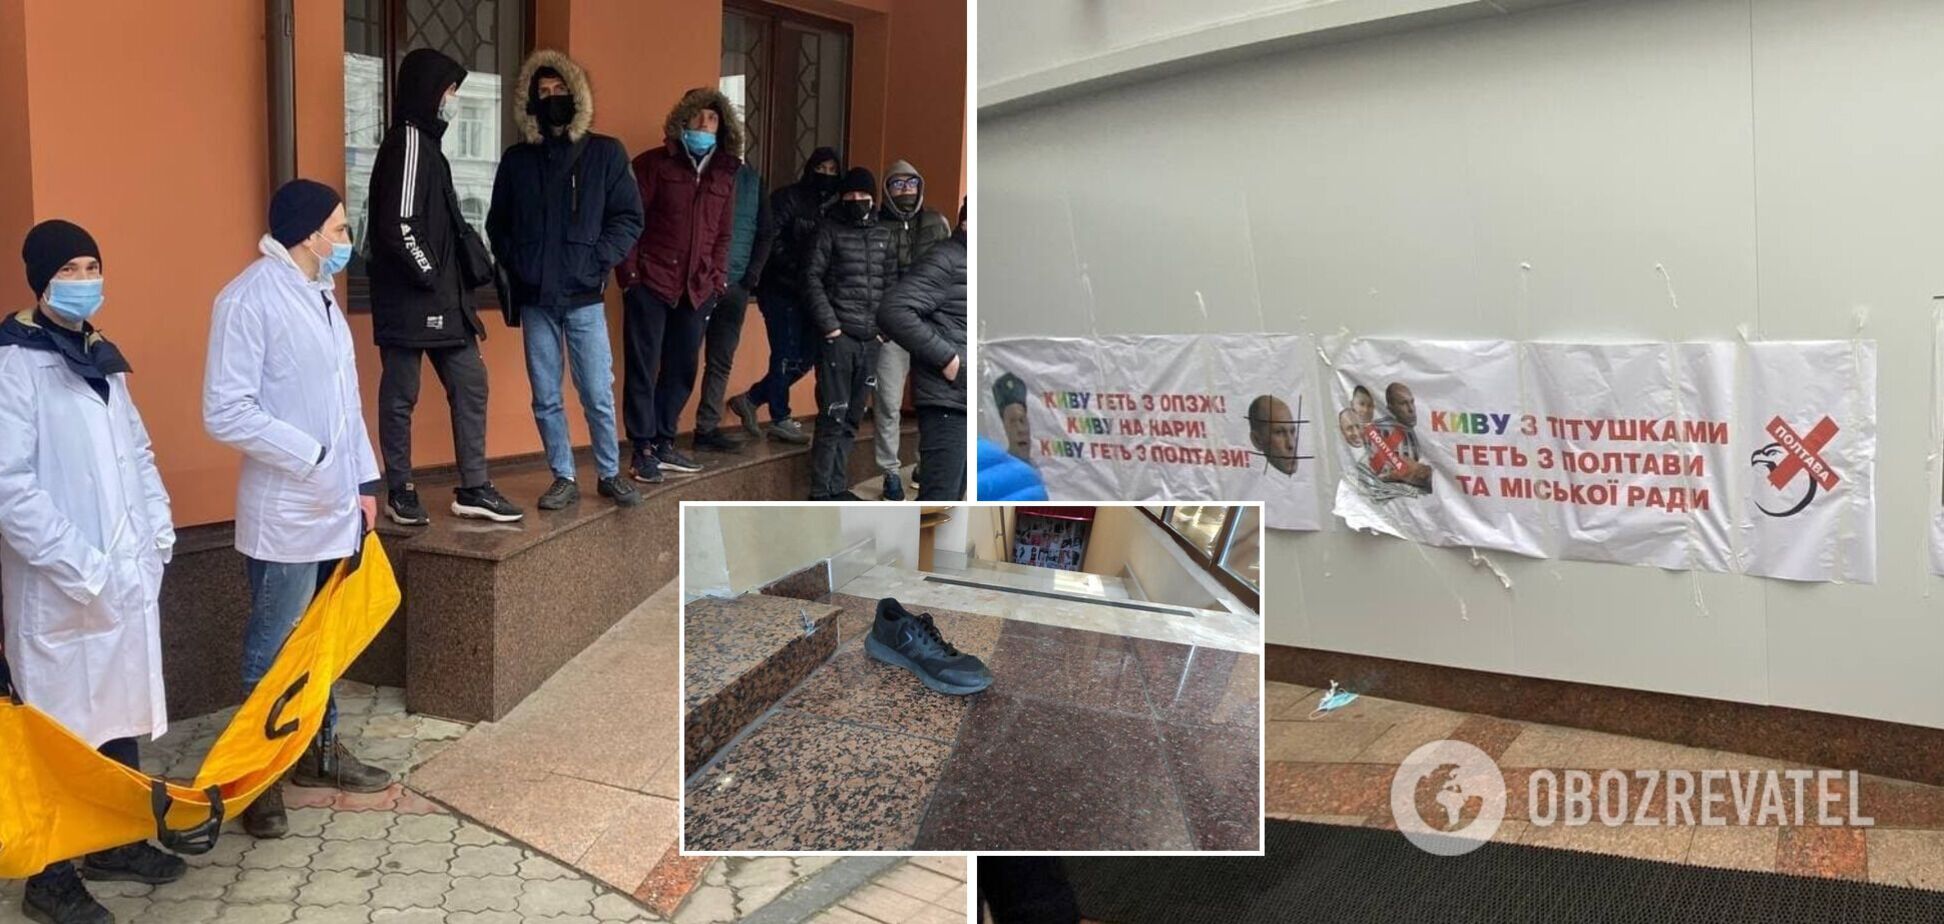 Нацкорпус в Полтаве блокировал съезд ОПЗЖ